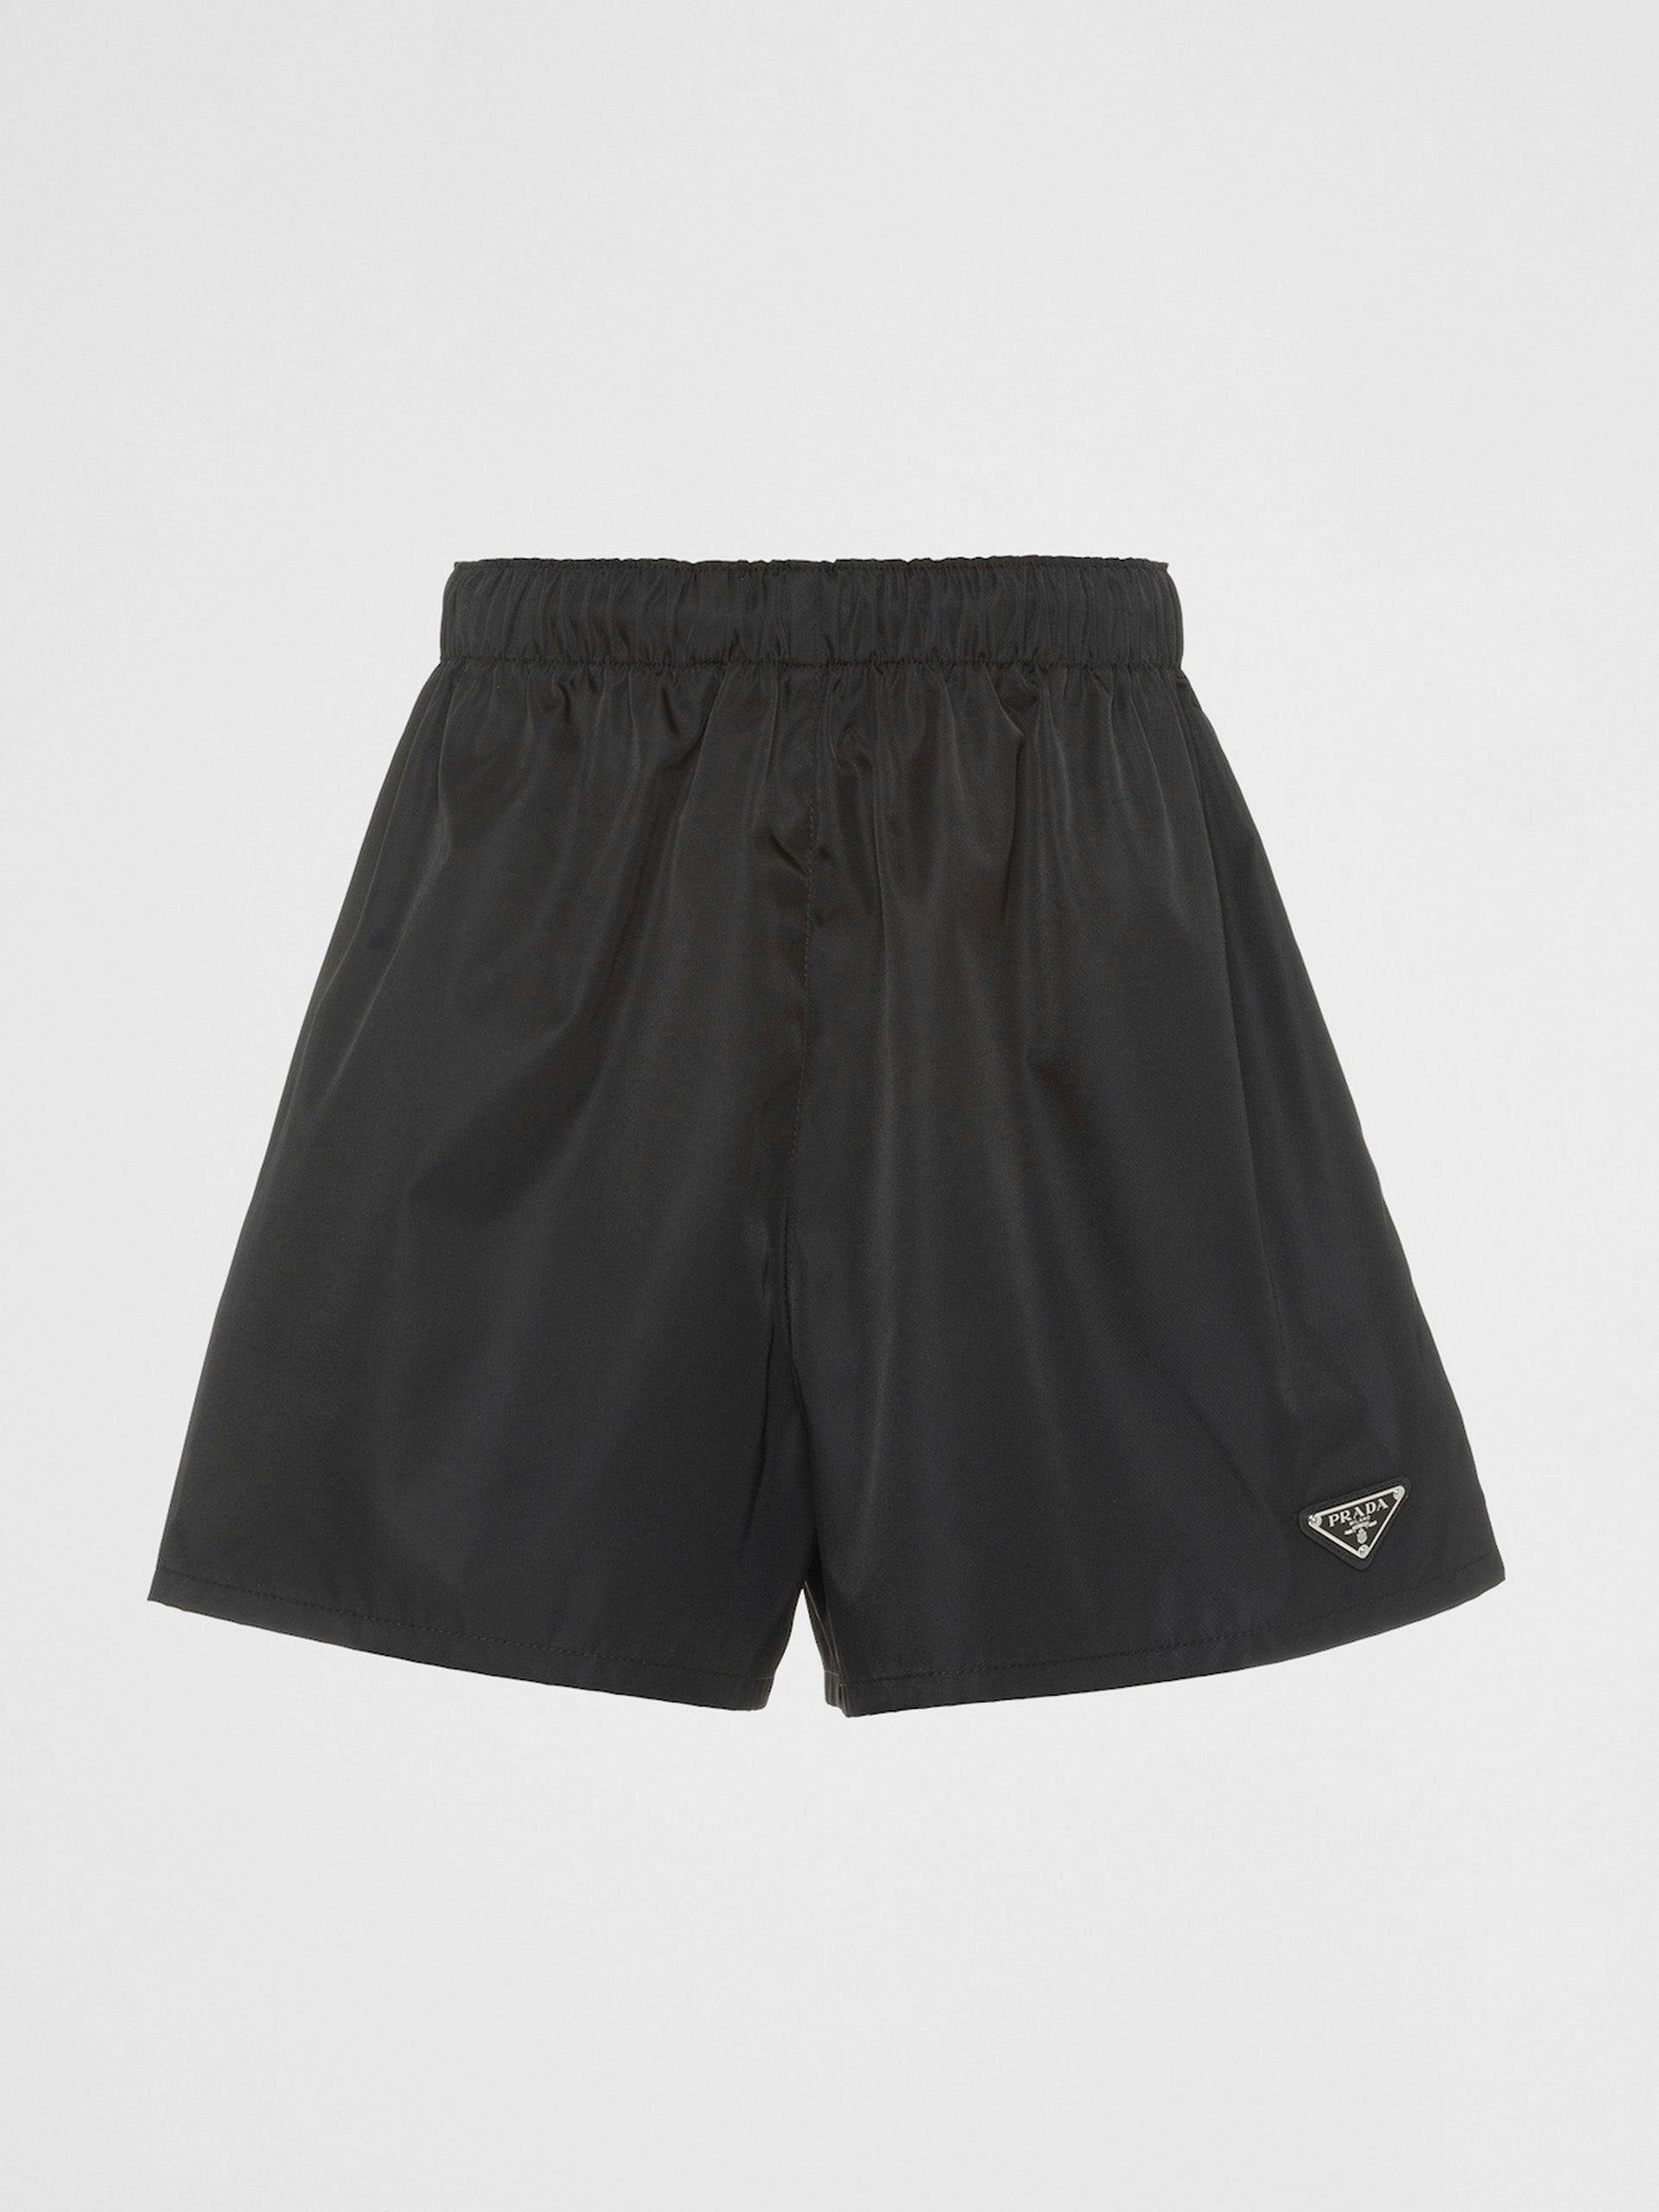 Black nylon shorts